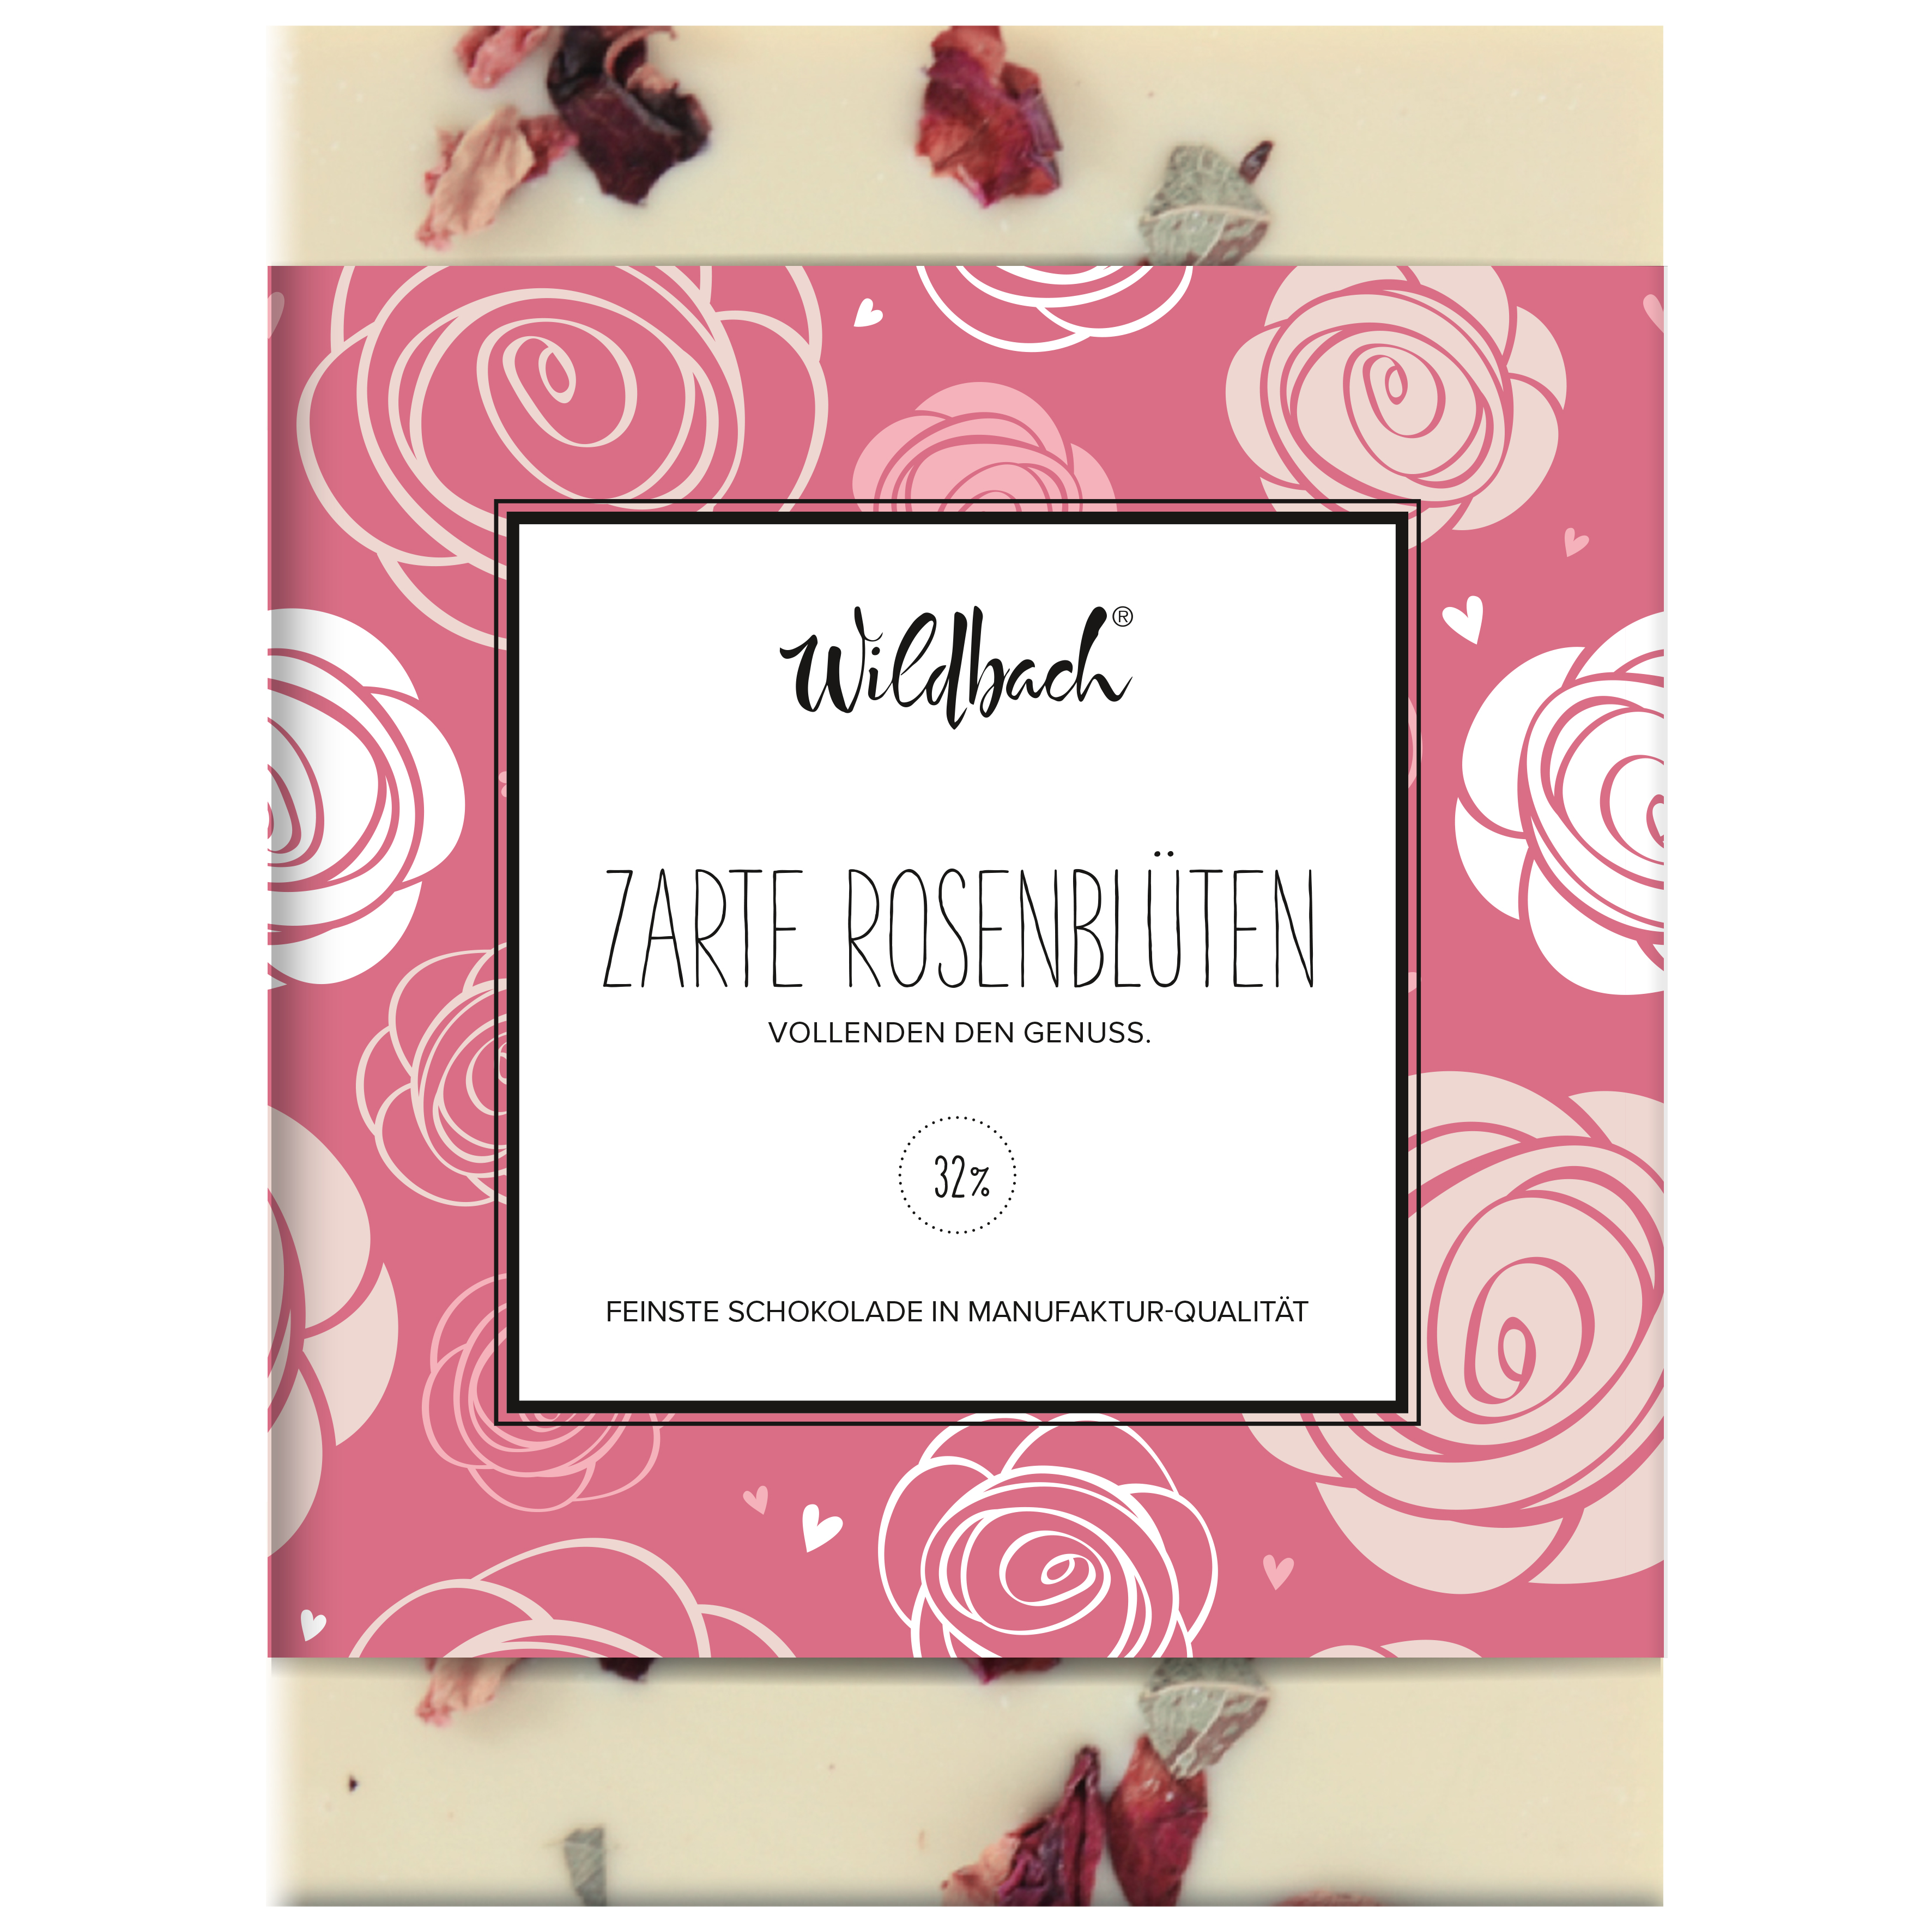 70g Tafel weiße Schokolade 32% mit Rosenblütenblättern